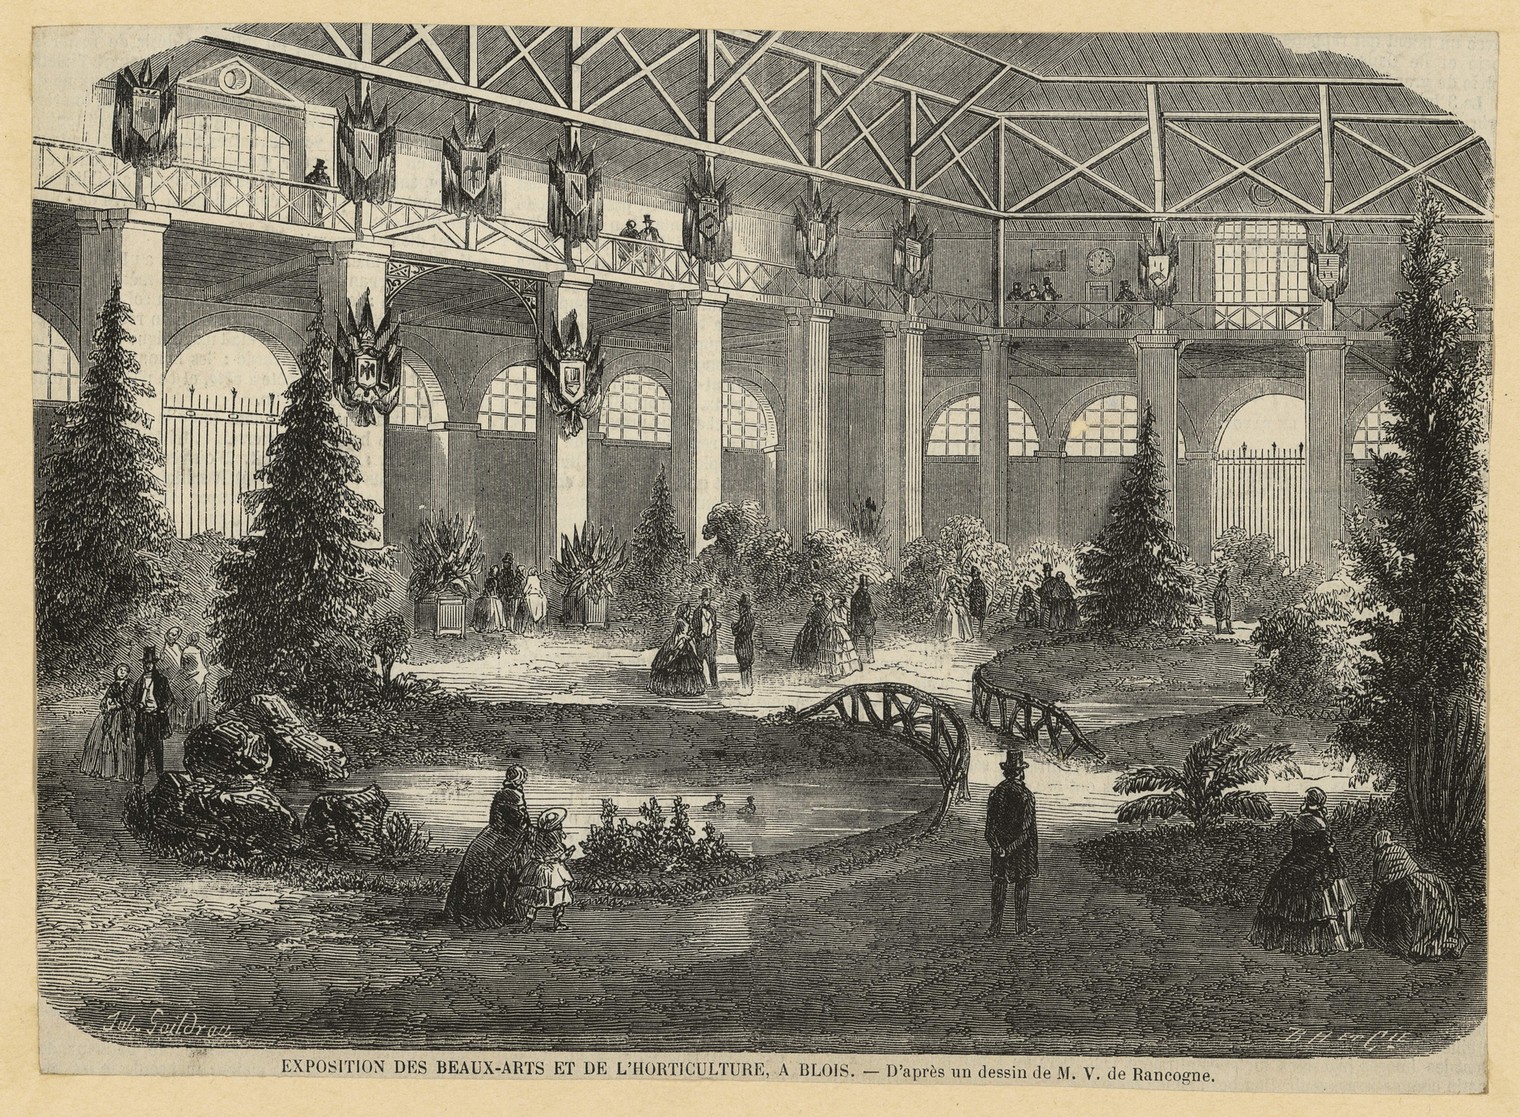 Exposition des Beaux arts et de l'horticulture de Blois, gravure sur bois d'après M. de Rancogne, 1858